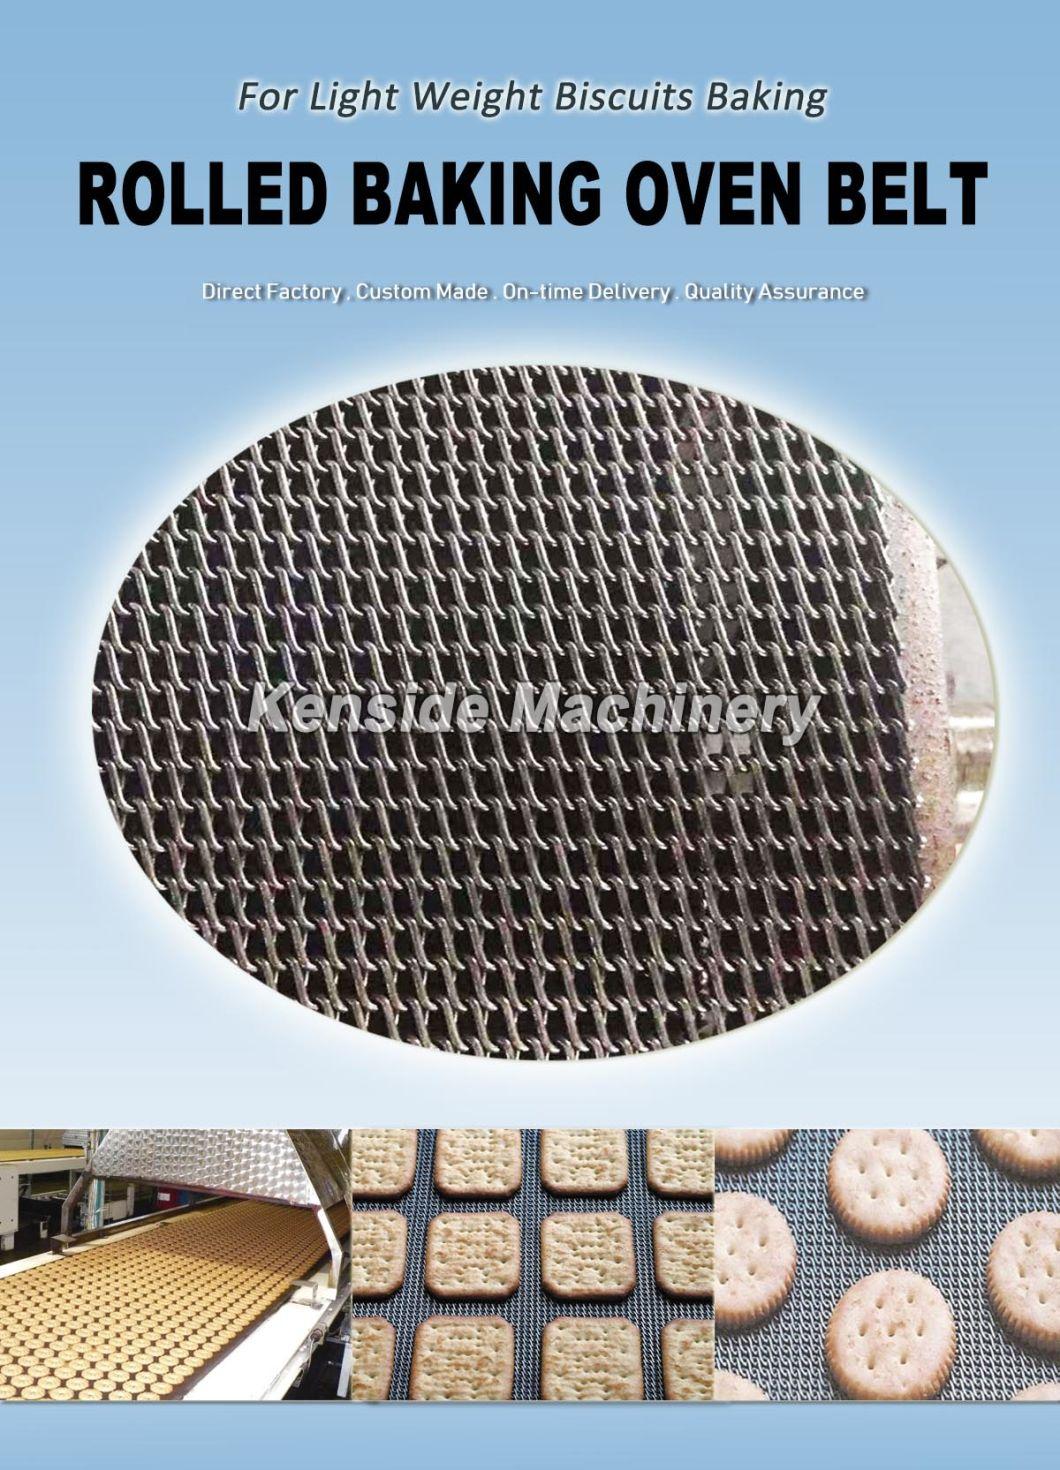 Z Belt for Biscuit Industries (rolled baking oven belt, Z47R)